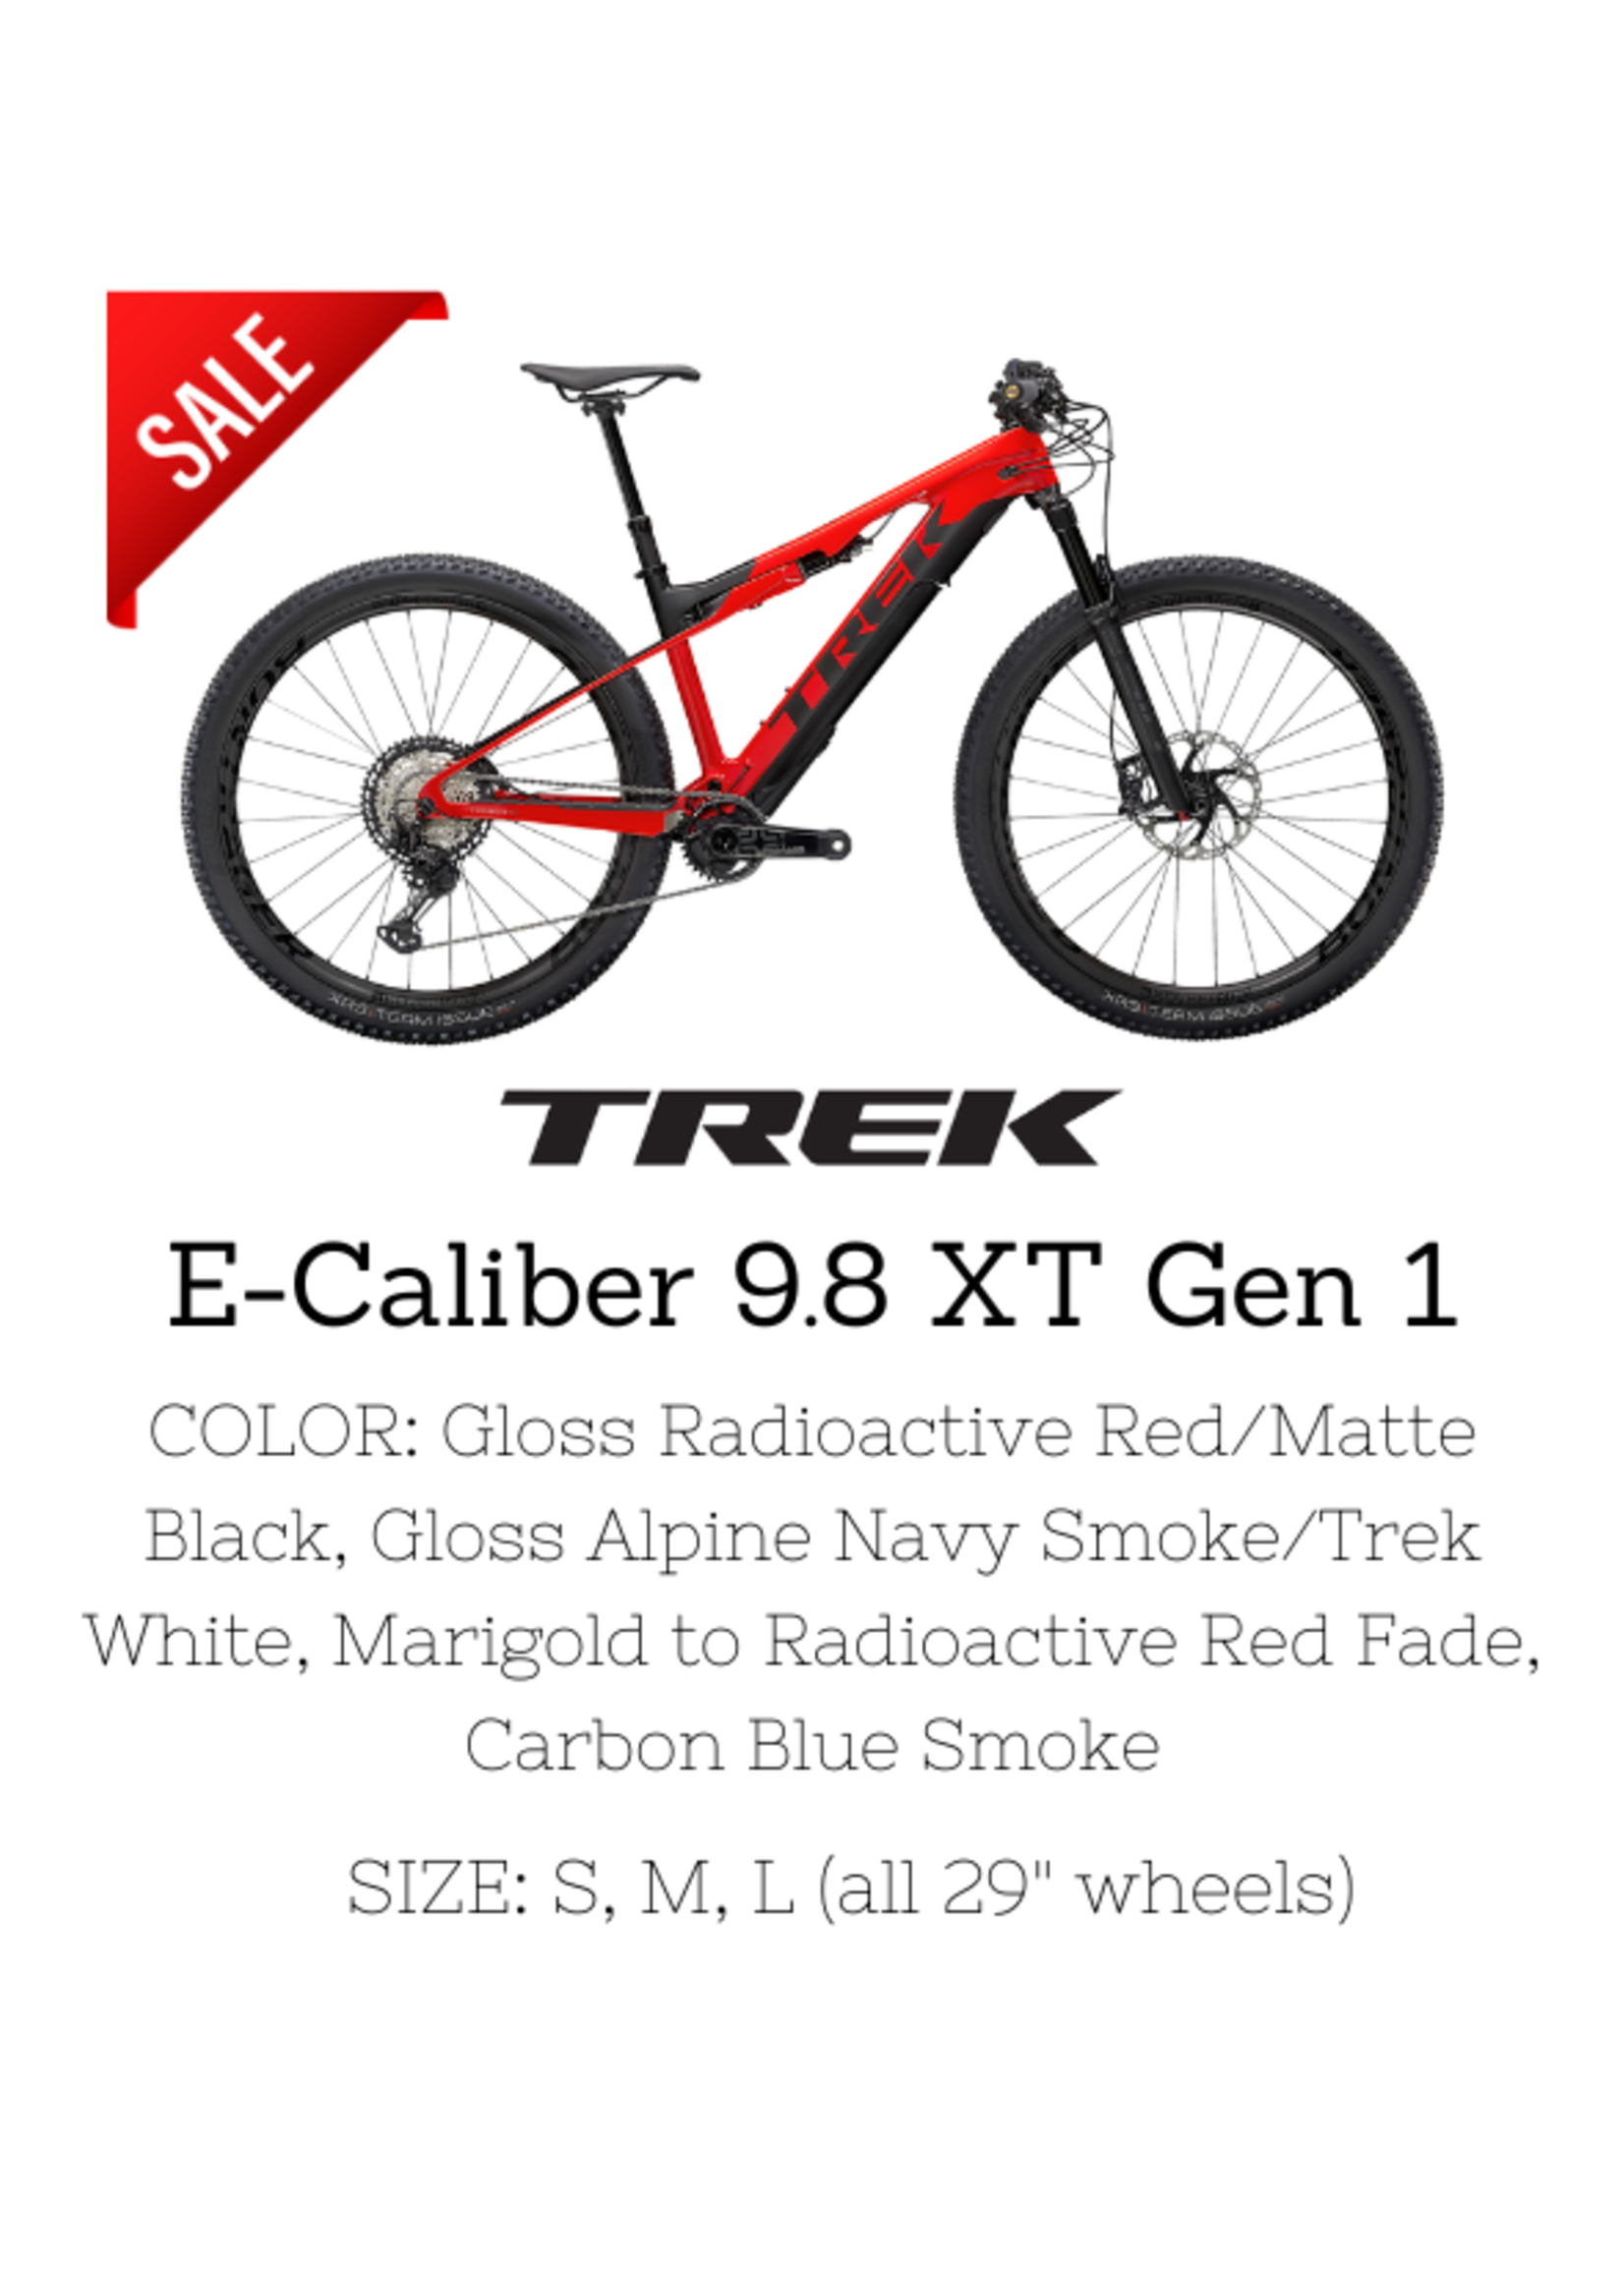 TREK Trek E-Caliber 9.8 XT Gen 1